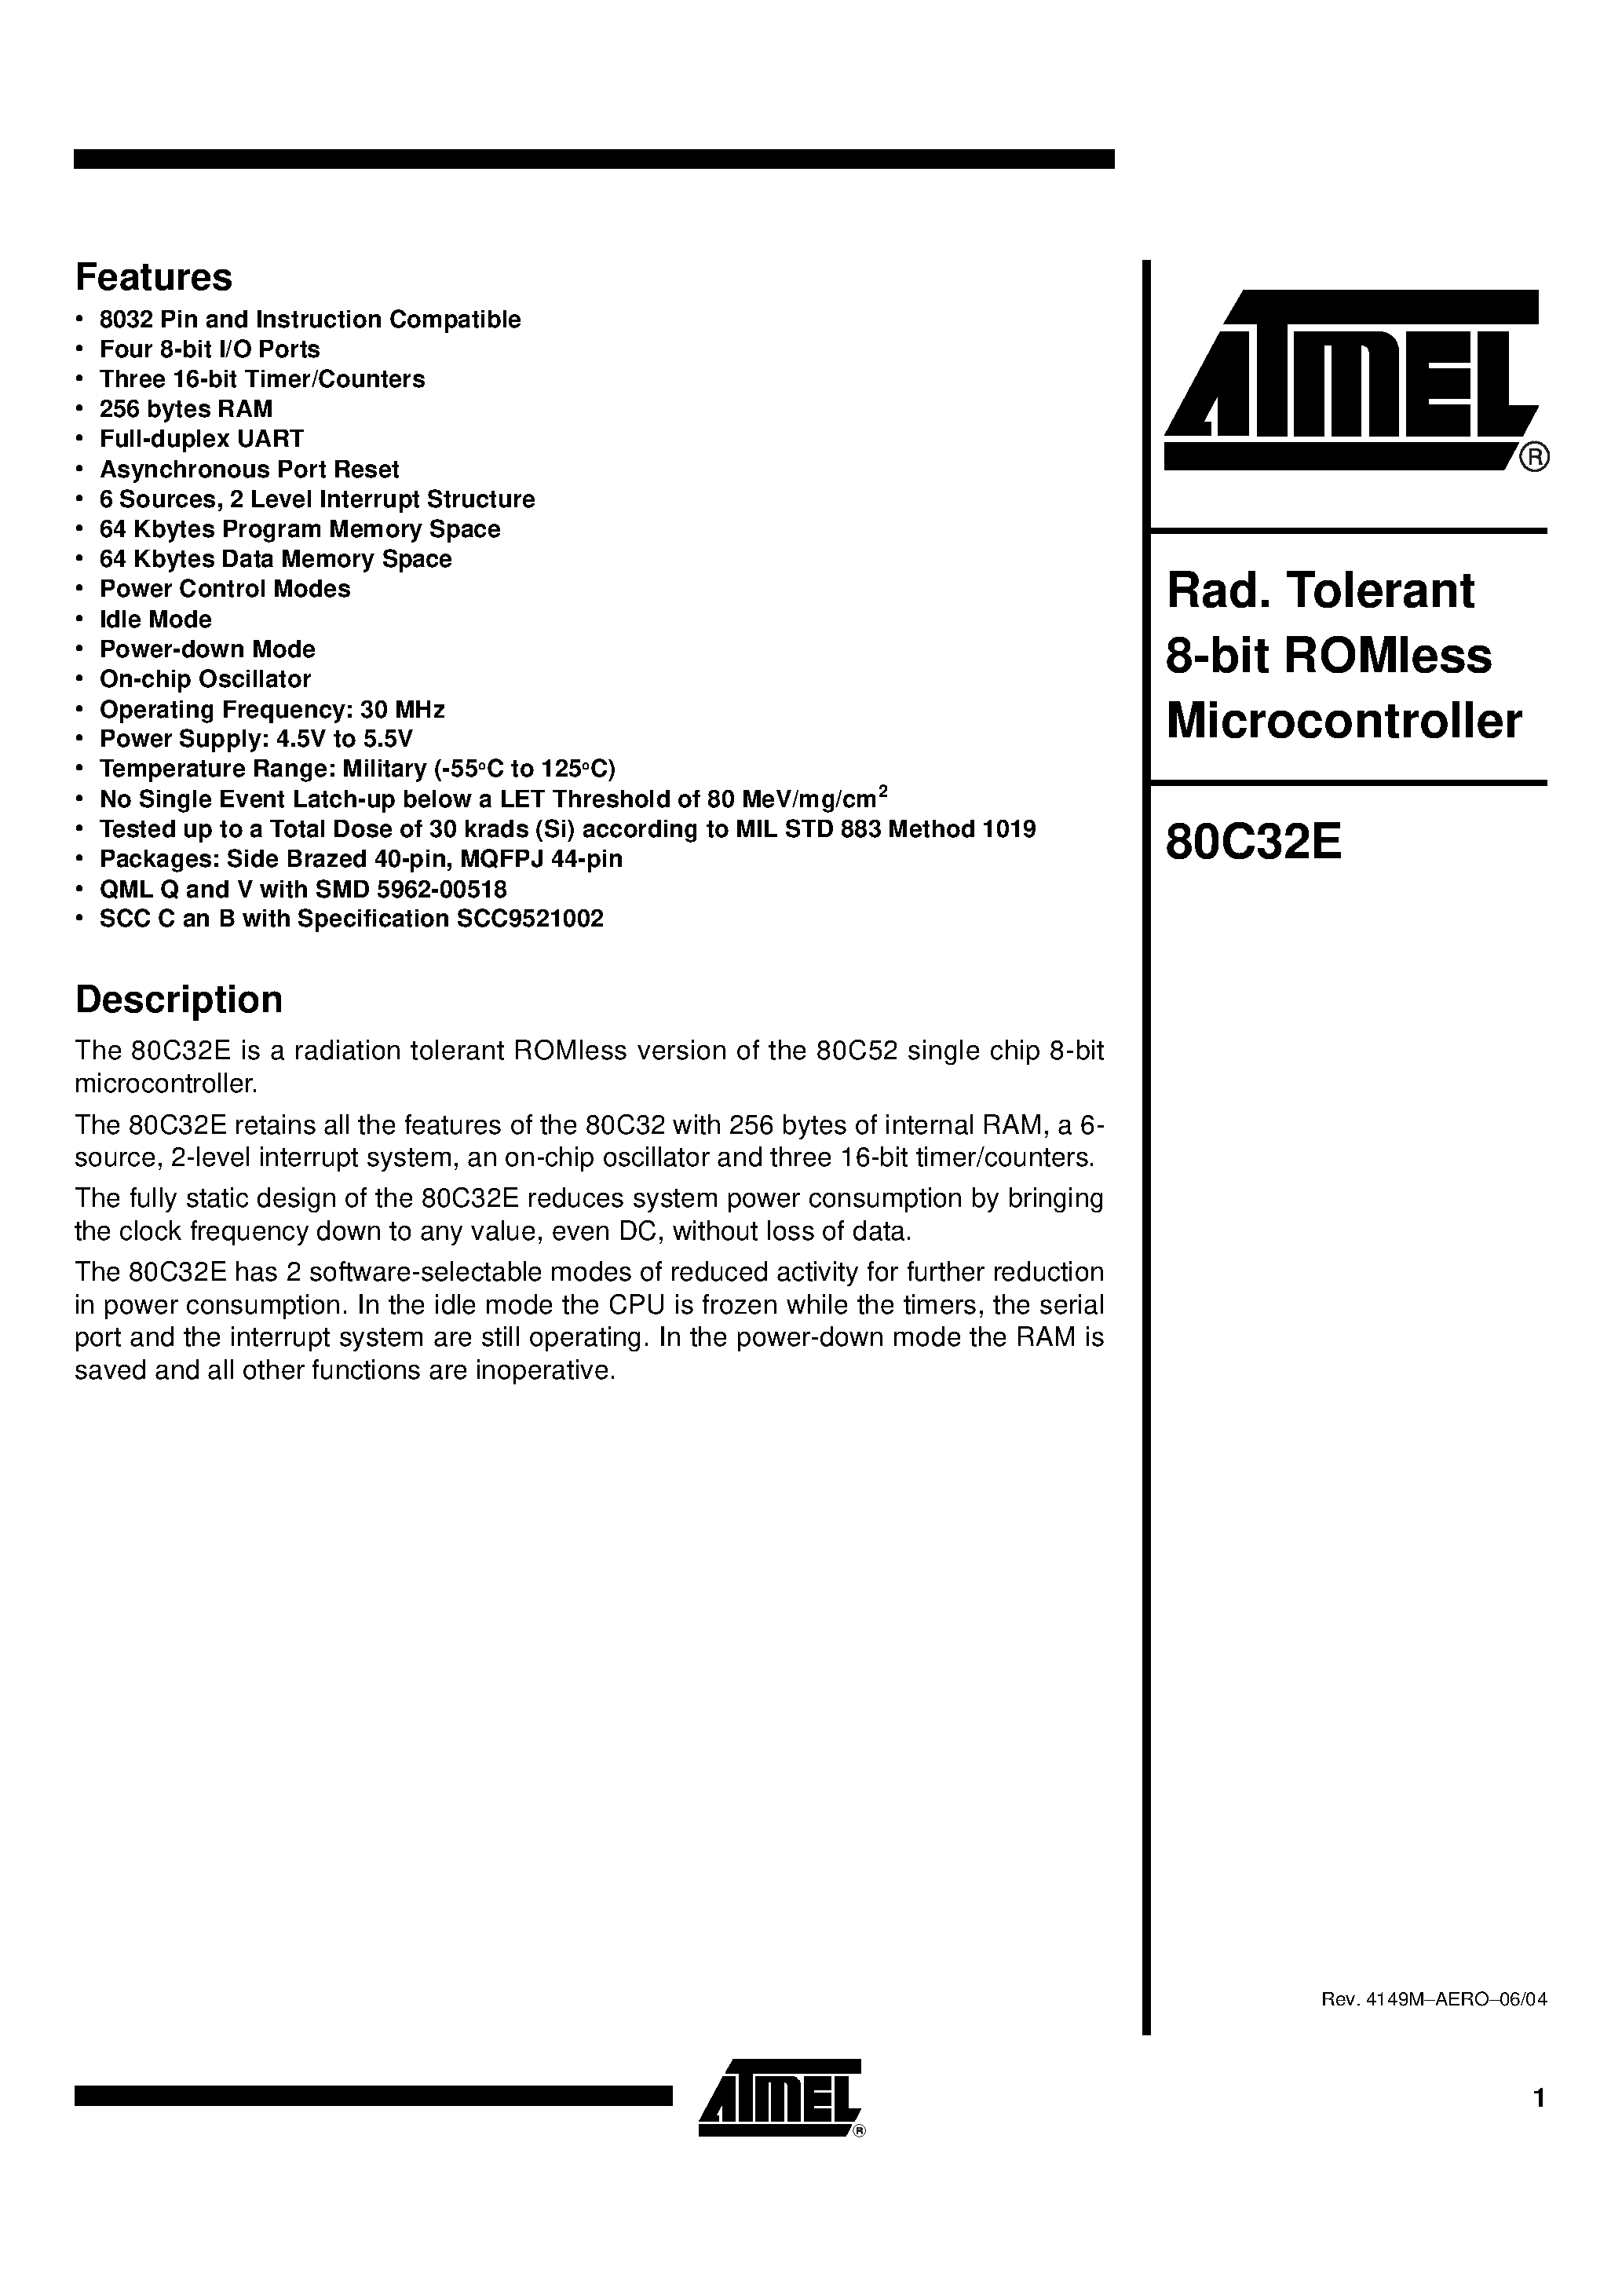 Даташит MC-80C32E-30-E - Rad. Tolerant 8-bit ROMless Microcontroller страница 1